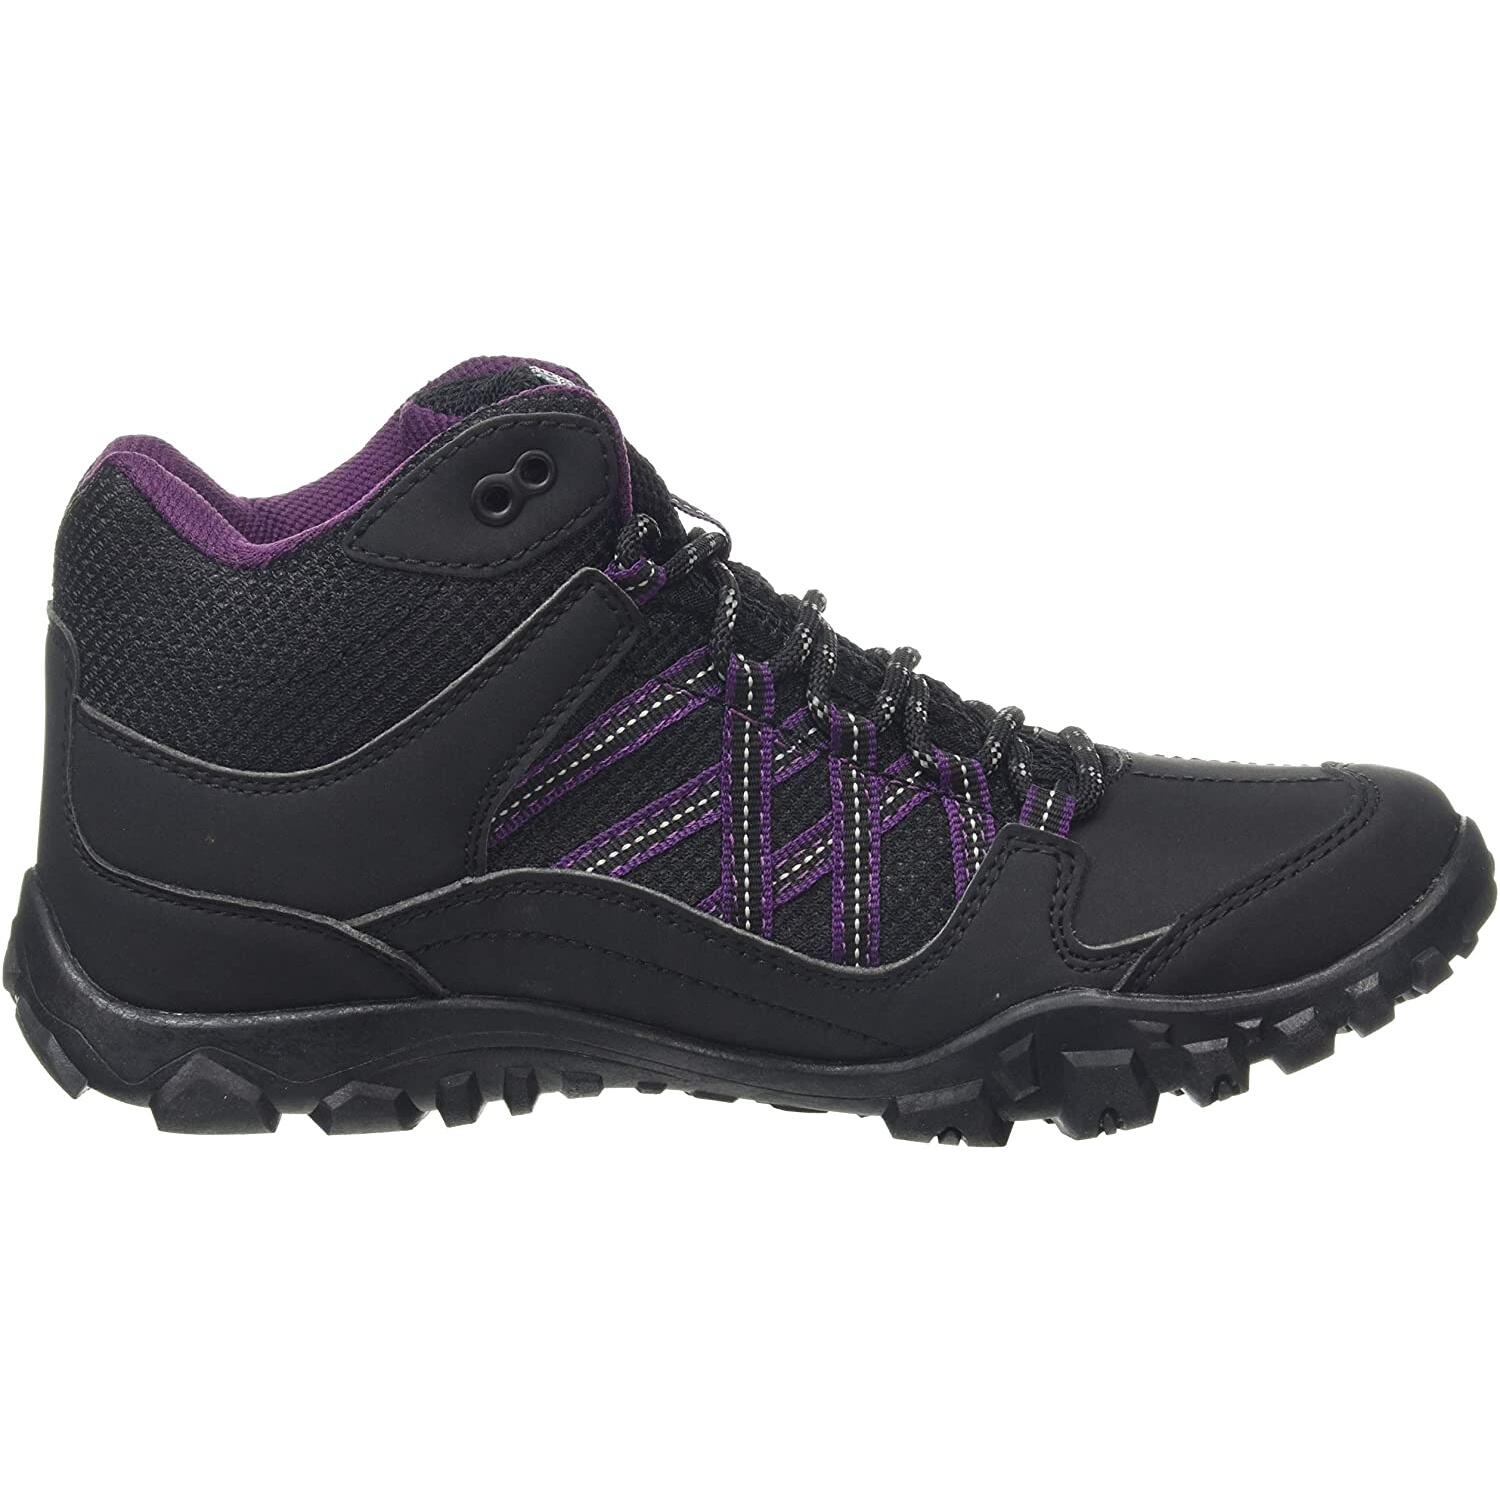 Womens/Ladies Edgepoint Waterproof Walking Boots (Black/Prune) 3/5